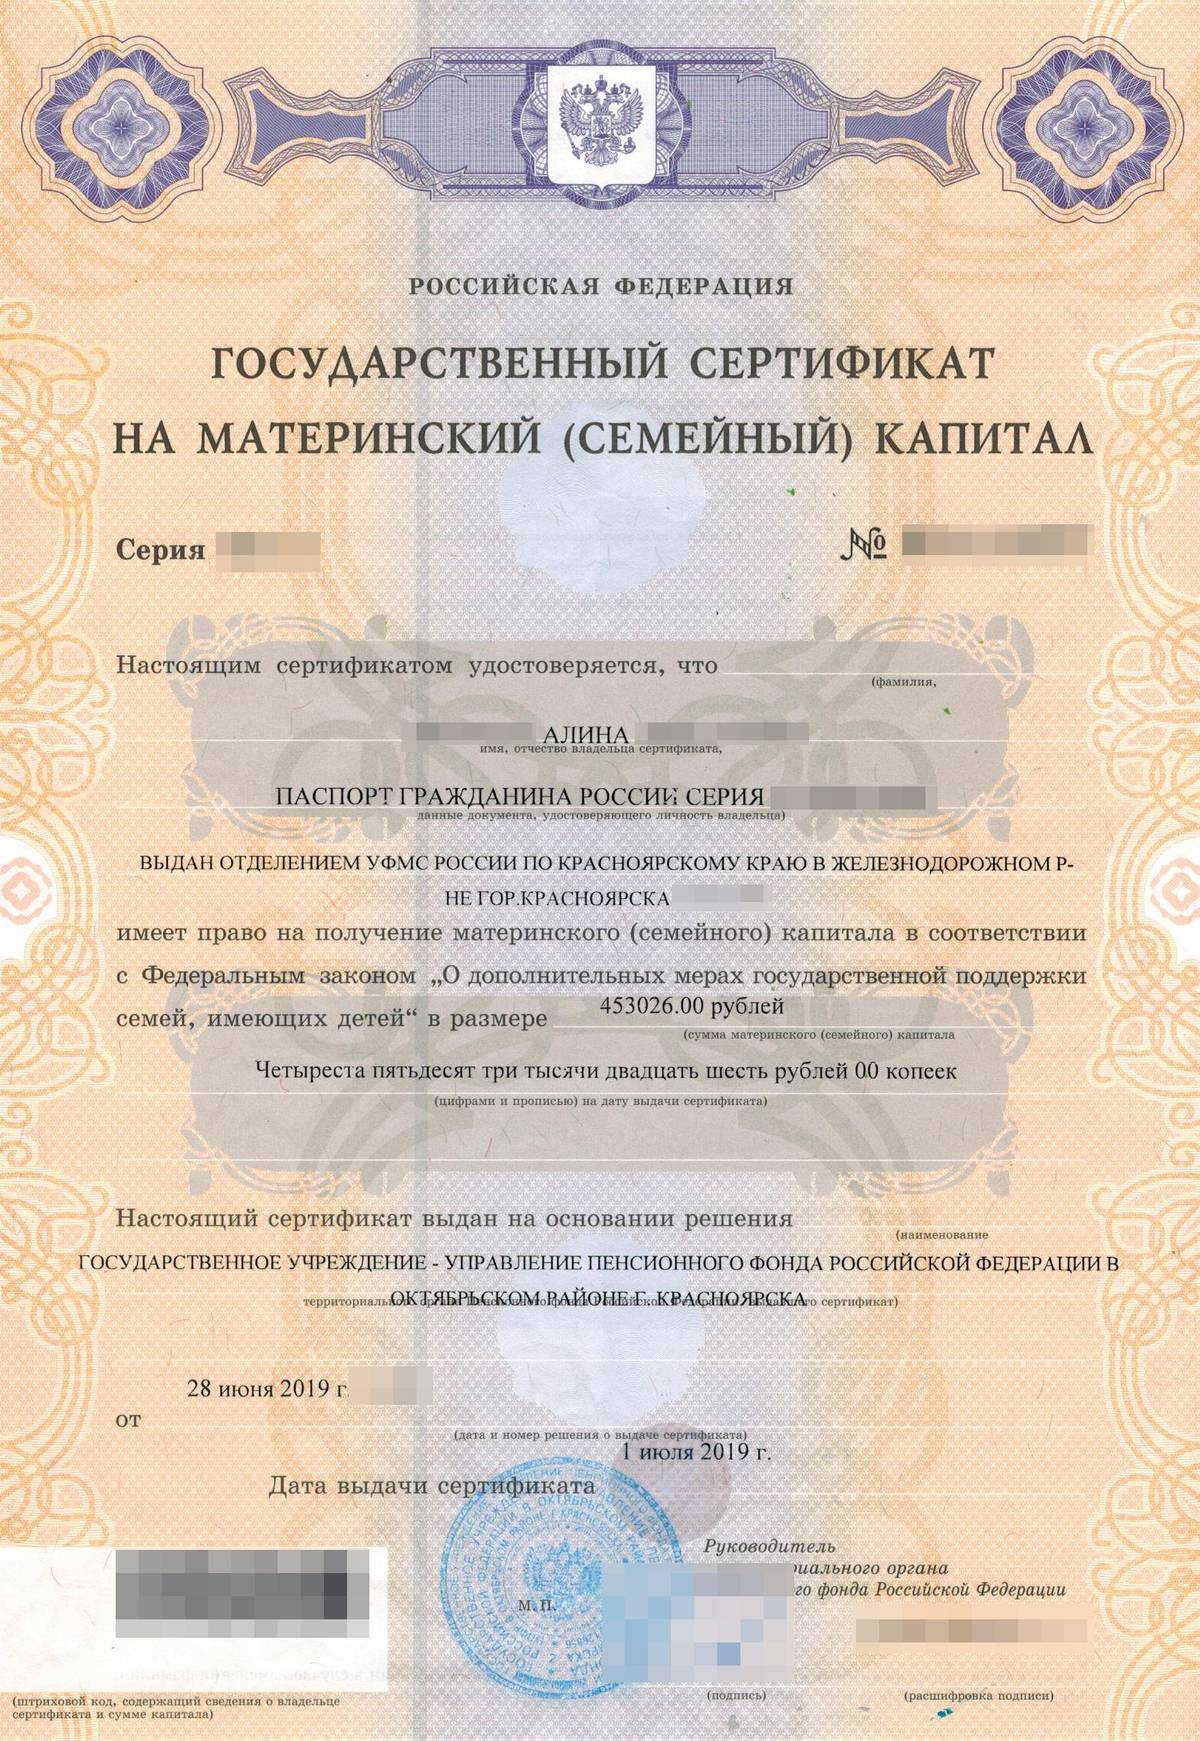 Пфр материнский сертификат. Как выглядит документ на материнский капитал. Сертификат на материнский капитал. Государственный сертификат на материнский капитал. Как выглядит сертификат на материнский капитал.